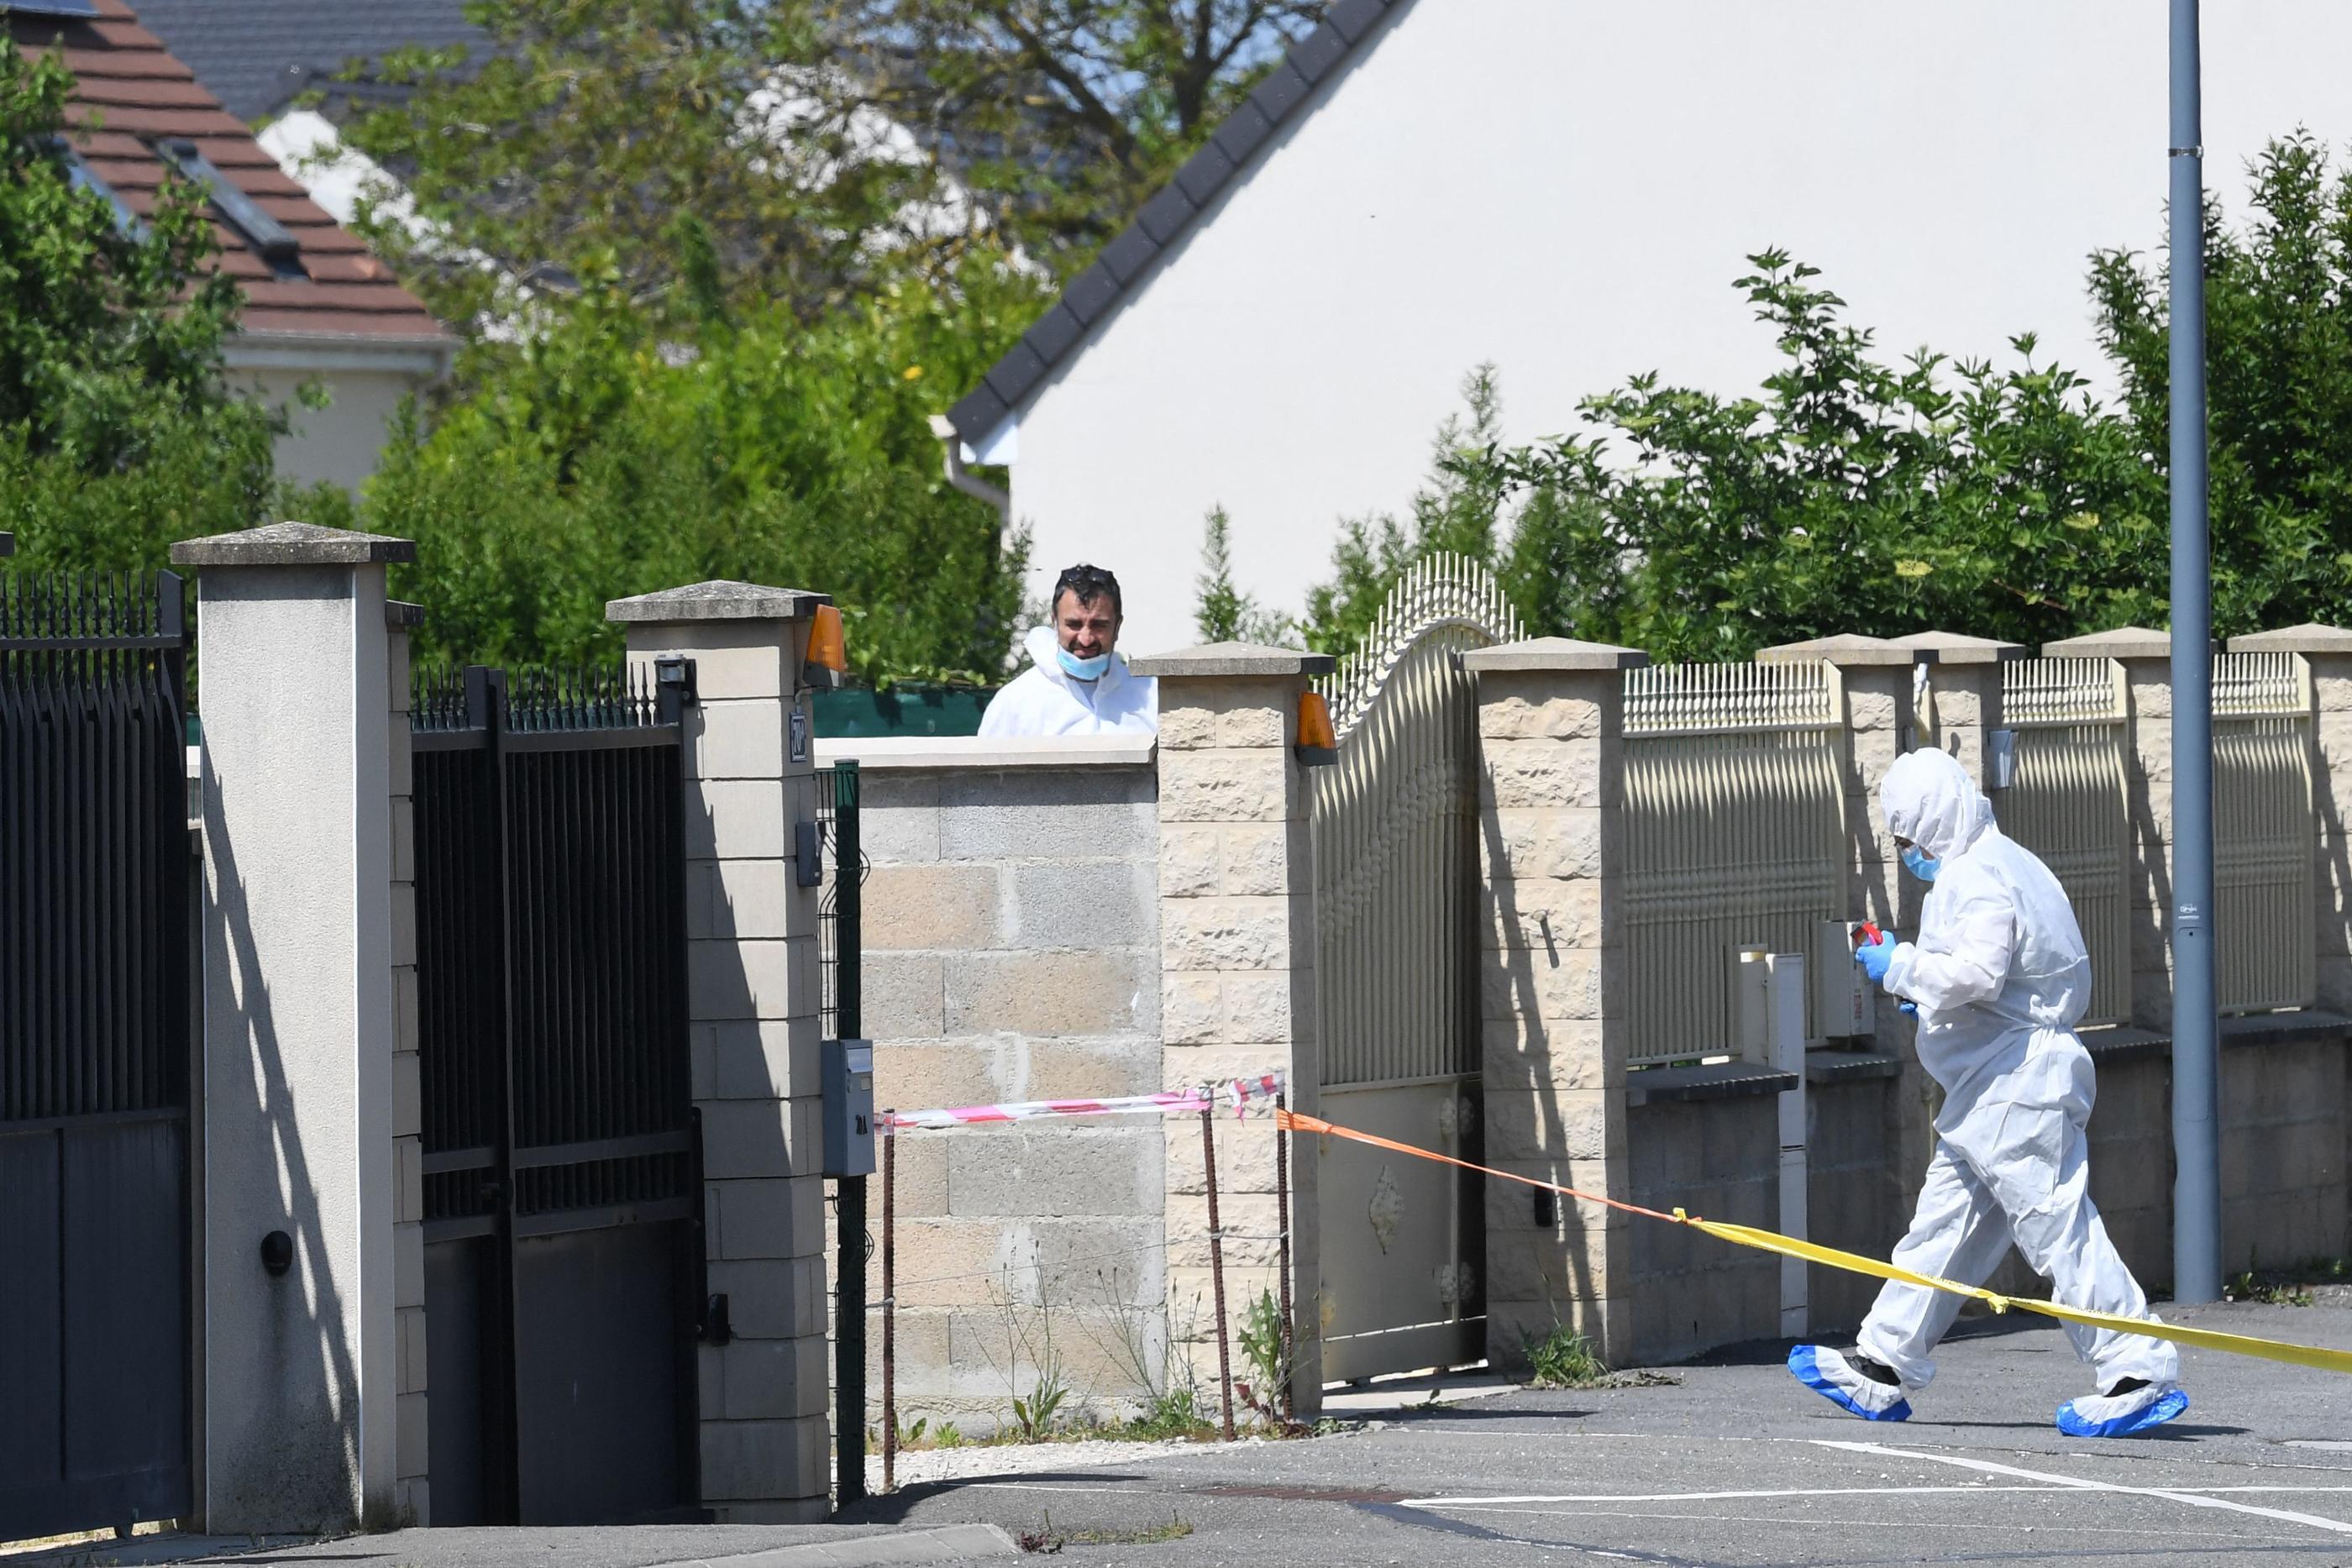 Des membres de la police scientifique devant le pavillon de la famille à Dreux dans l'est du département de l'Eure-et-Loir, où trois personnes d'une même famille ont été retrouvées mortes poignardées. AFP/JEAN-FRANCOIS MONIER